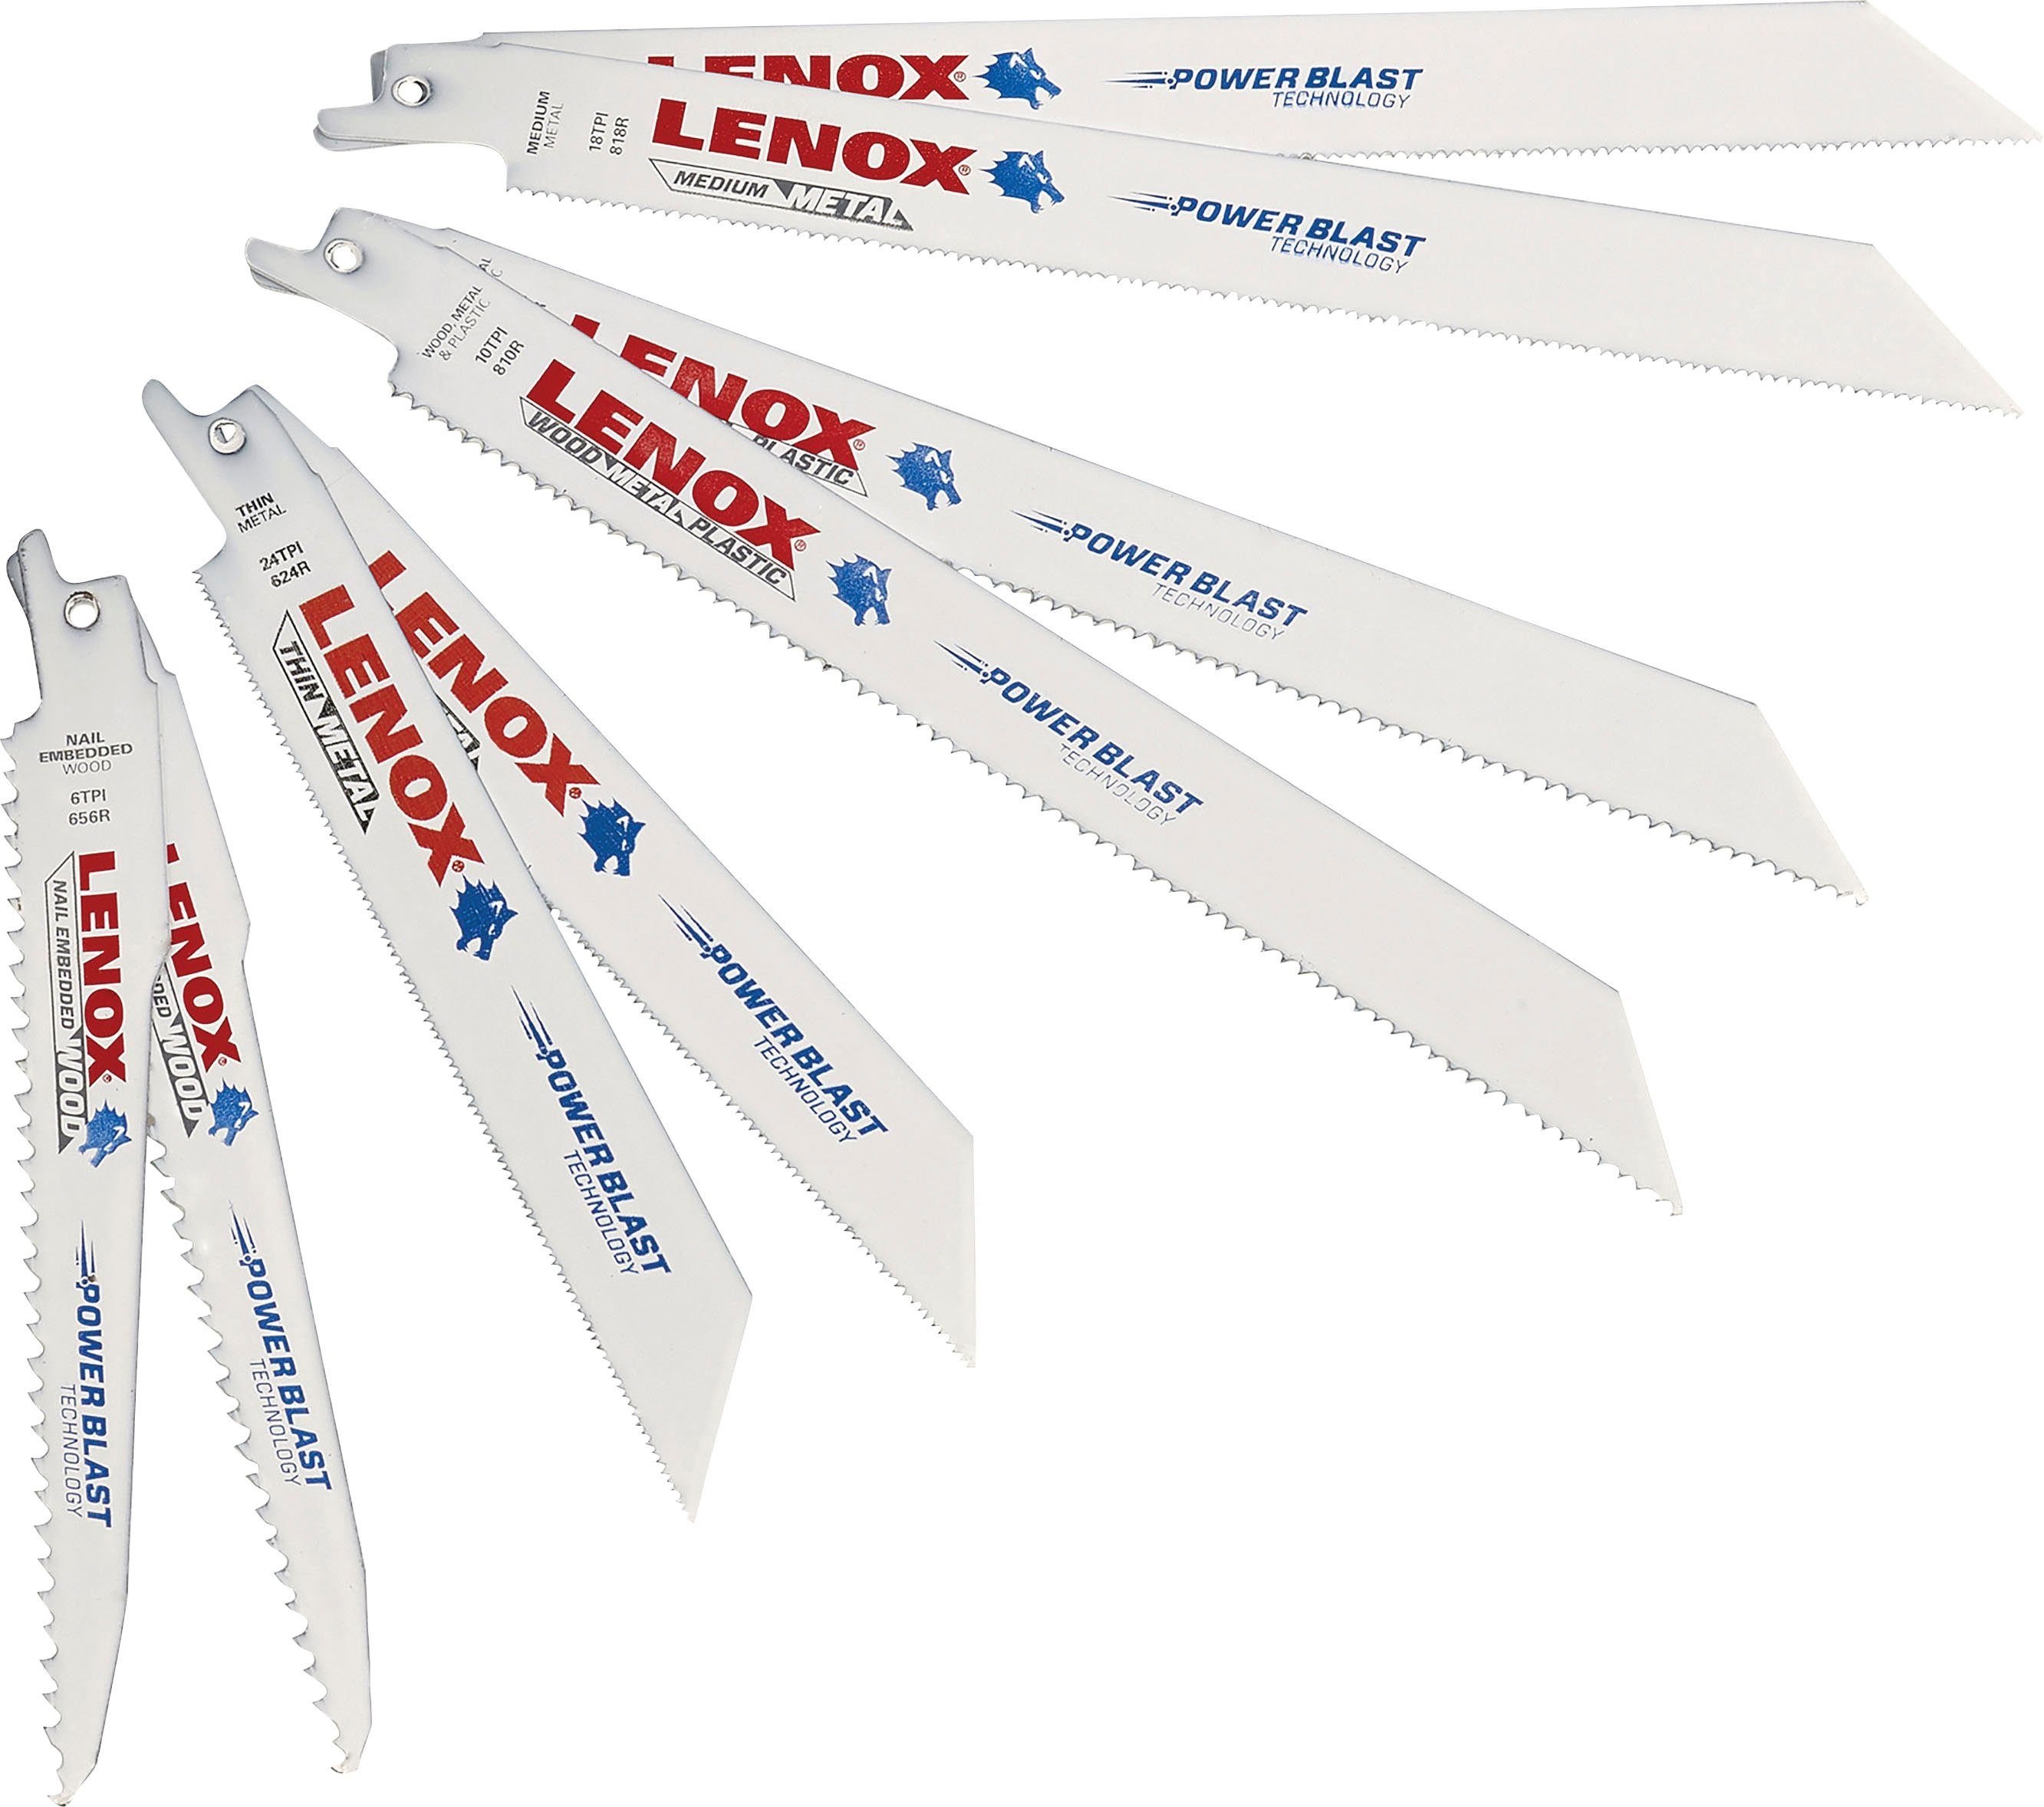 Lenox Säbelsägeblatt 121439KPE Set 9-tlg. für Holz und Metall, 2x 656R, 2x 624R, 2x 810R, 2x 818R, 1x 960R | Säbelsägeblätter